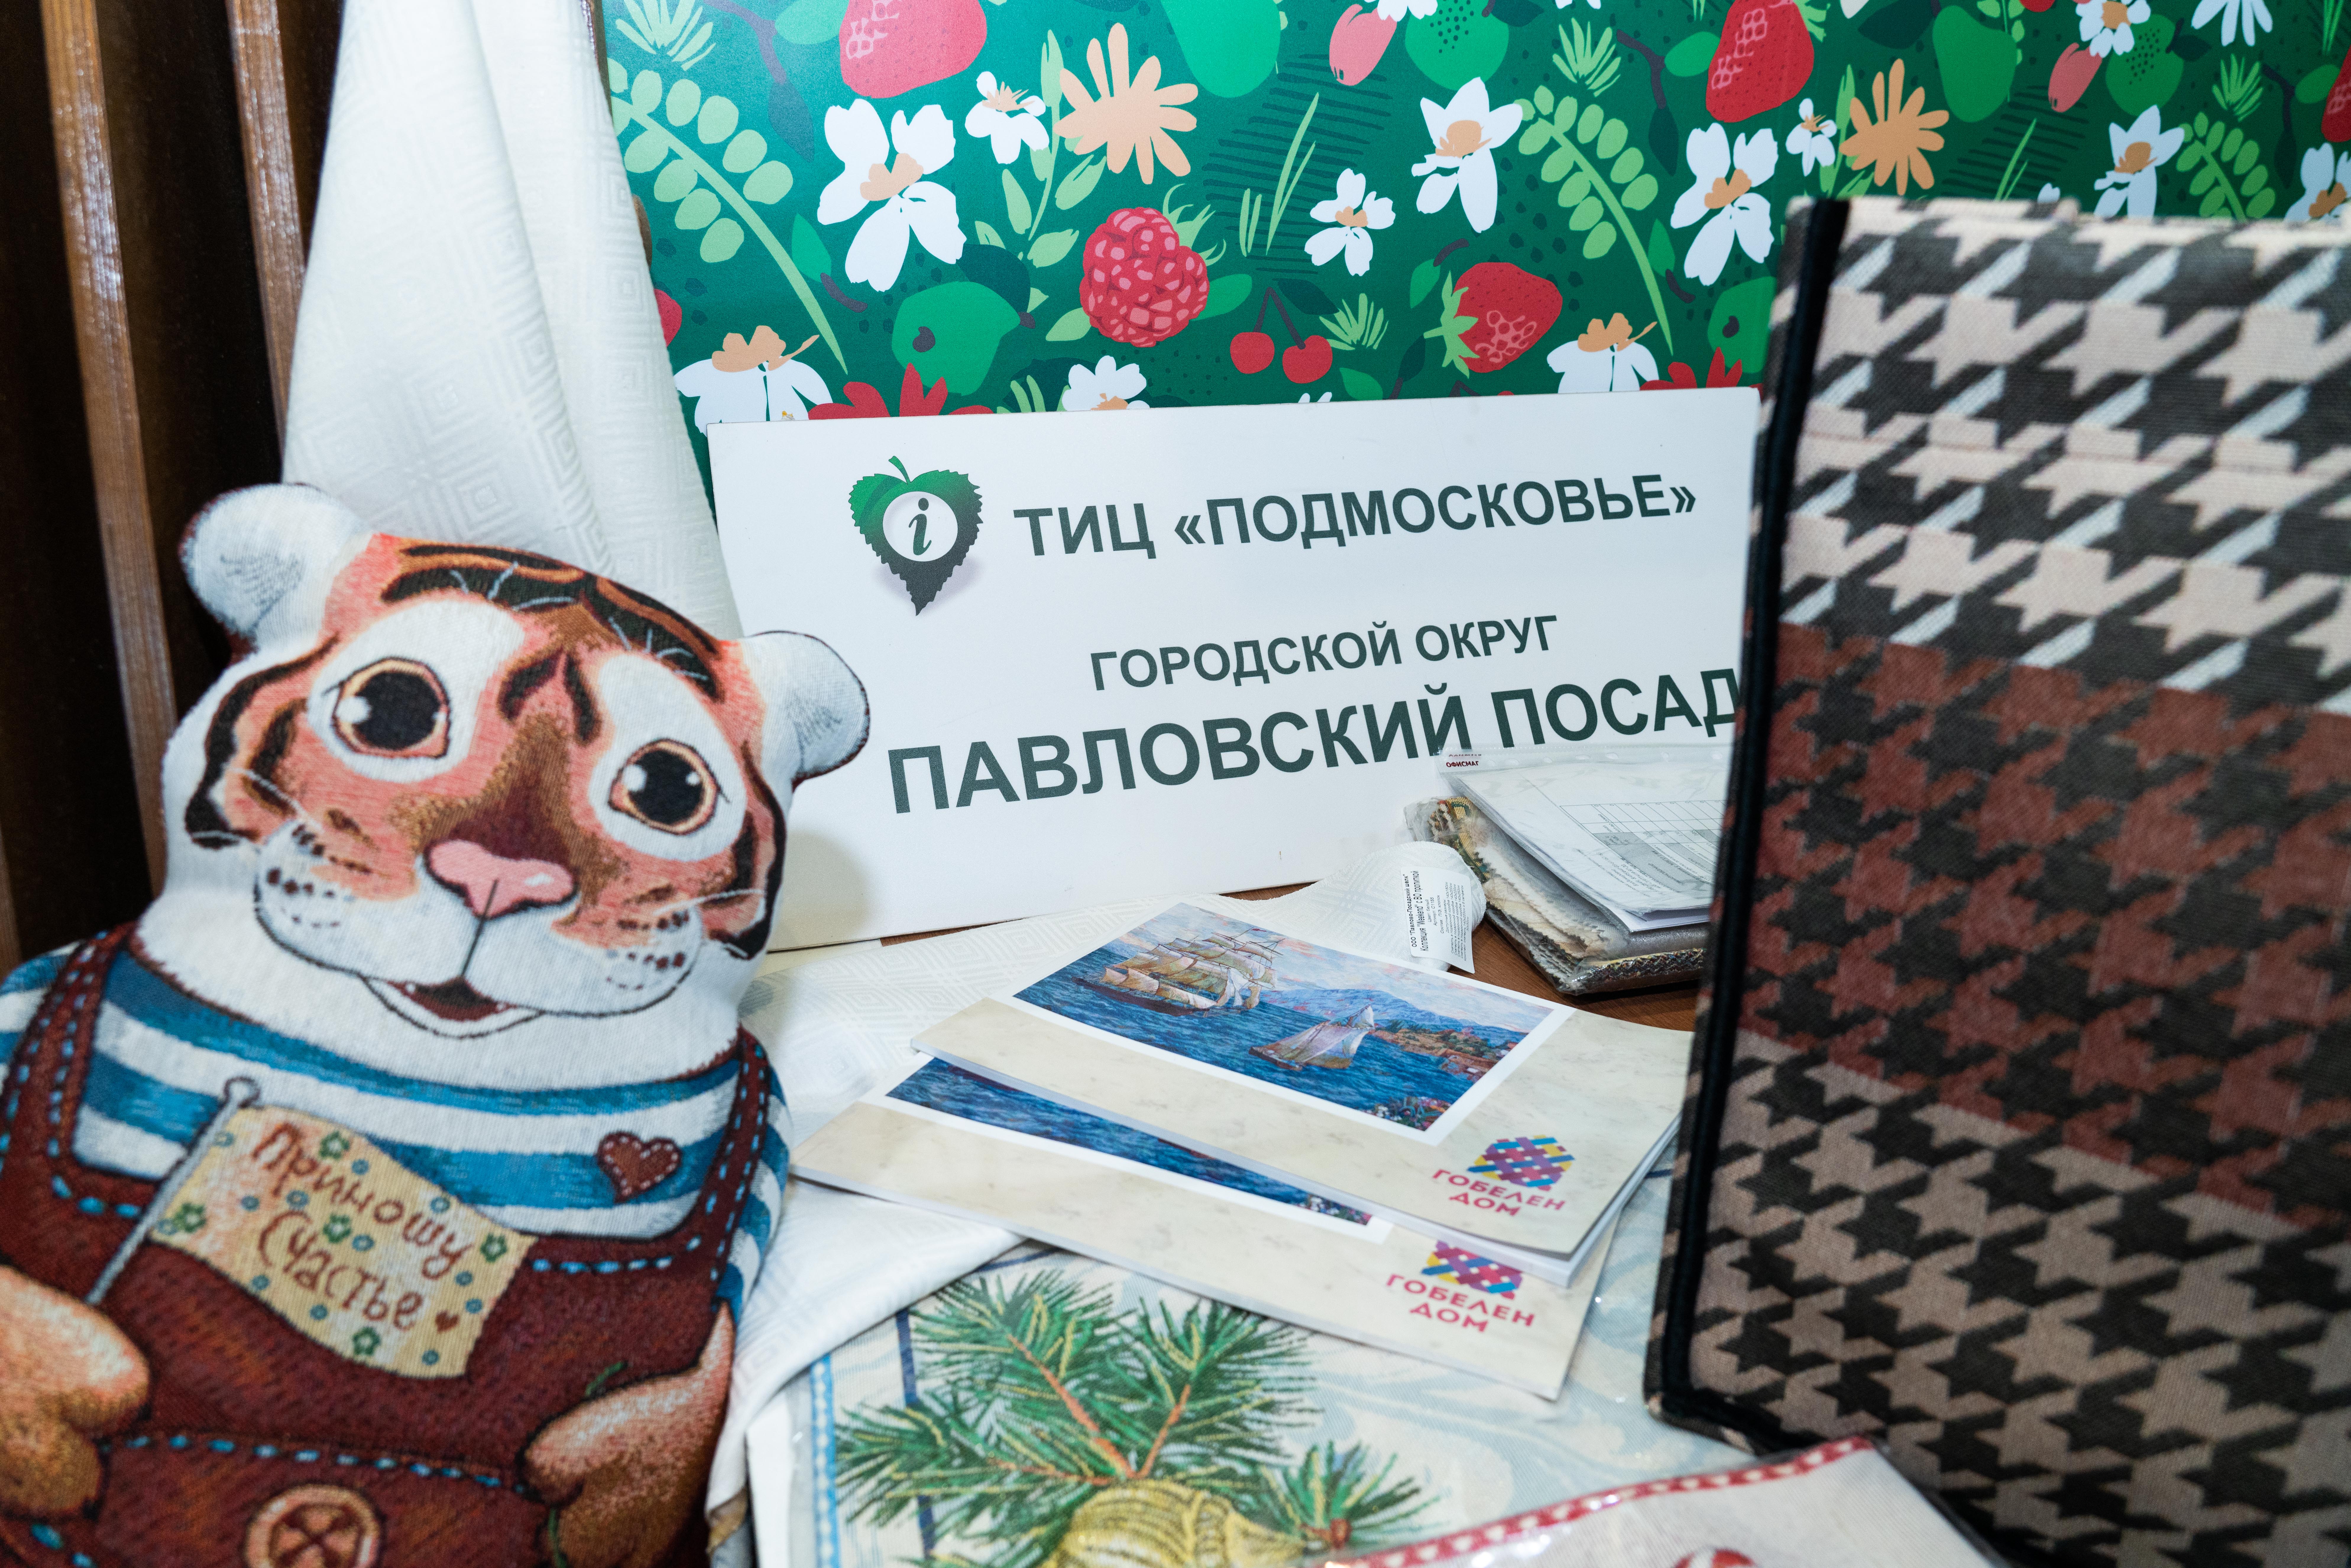 Гости праздника узнали о Павловском Посаде через призму туристических проектов